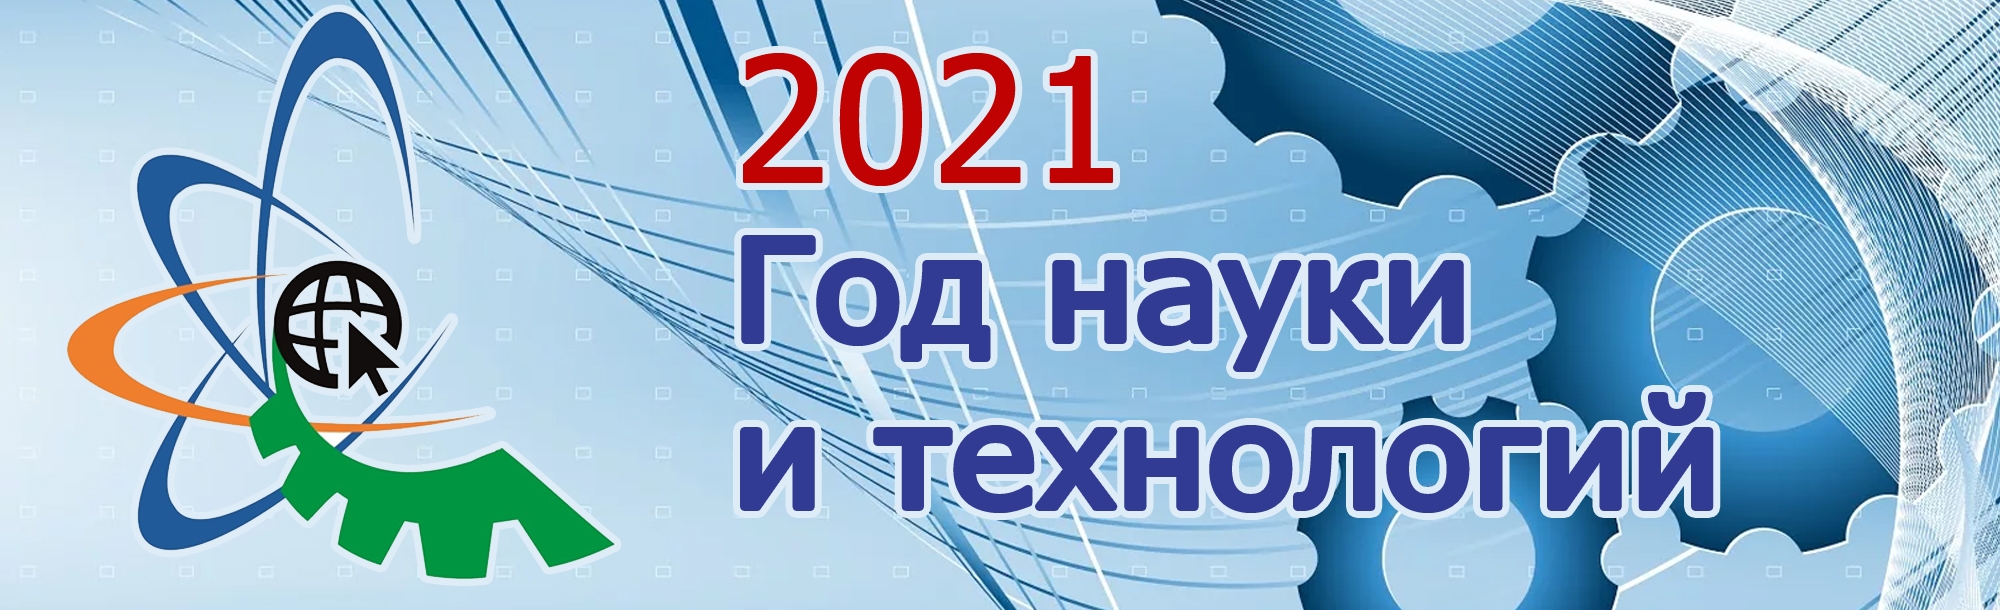 Год науки и технологий 2021 в России эмблема